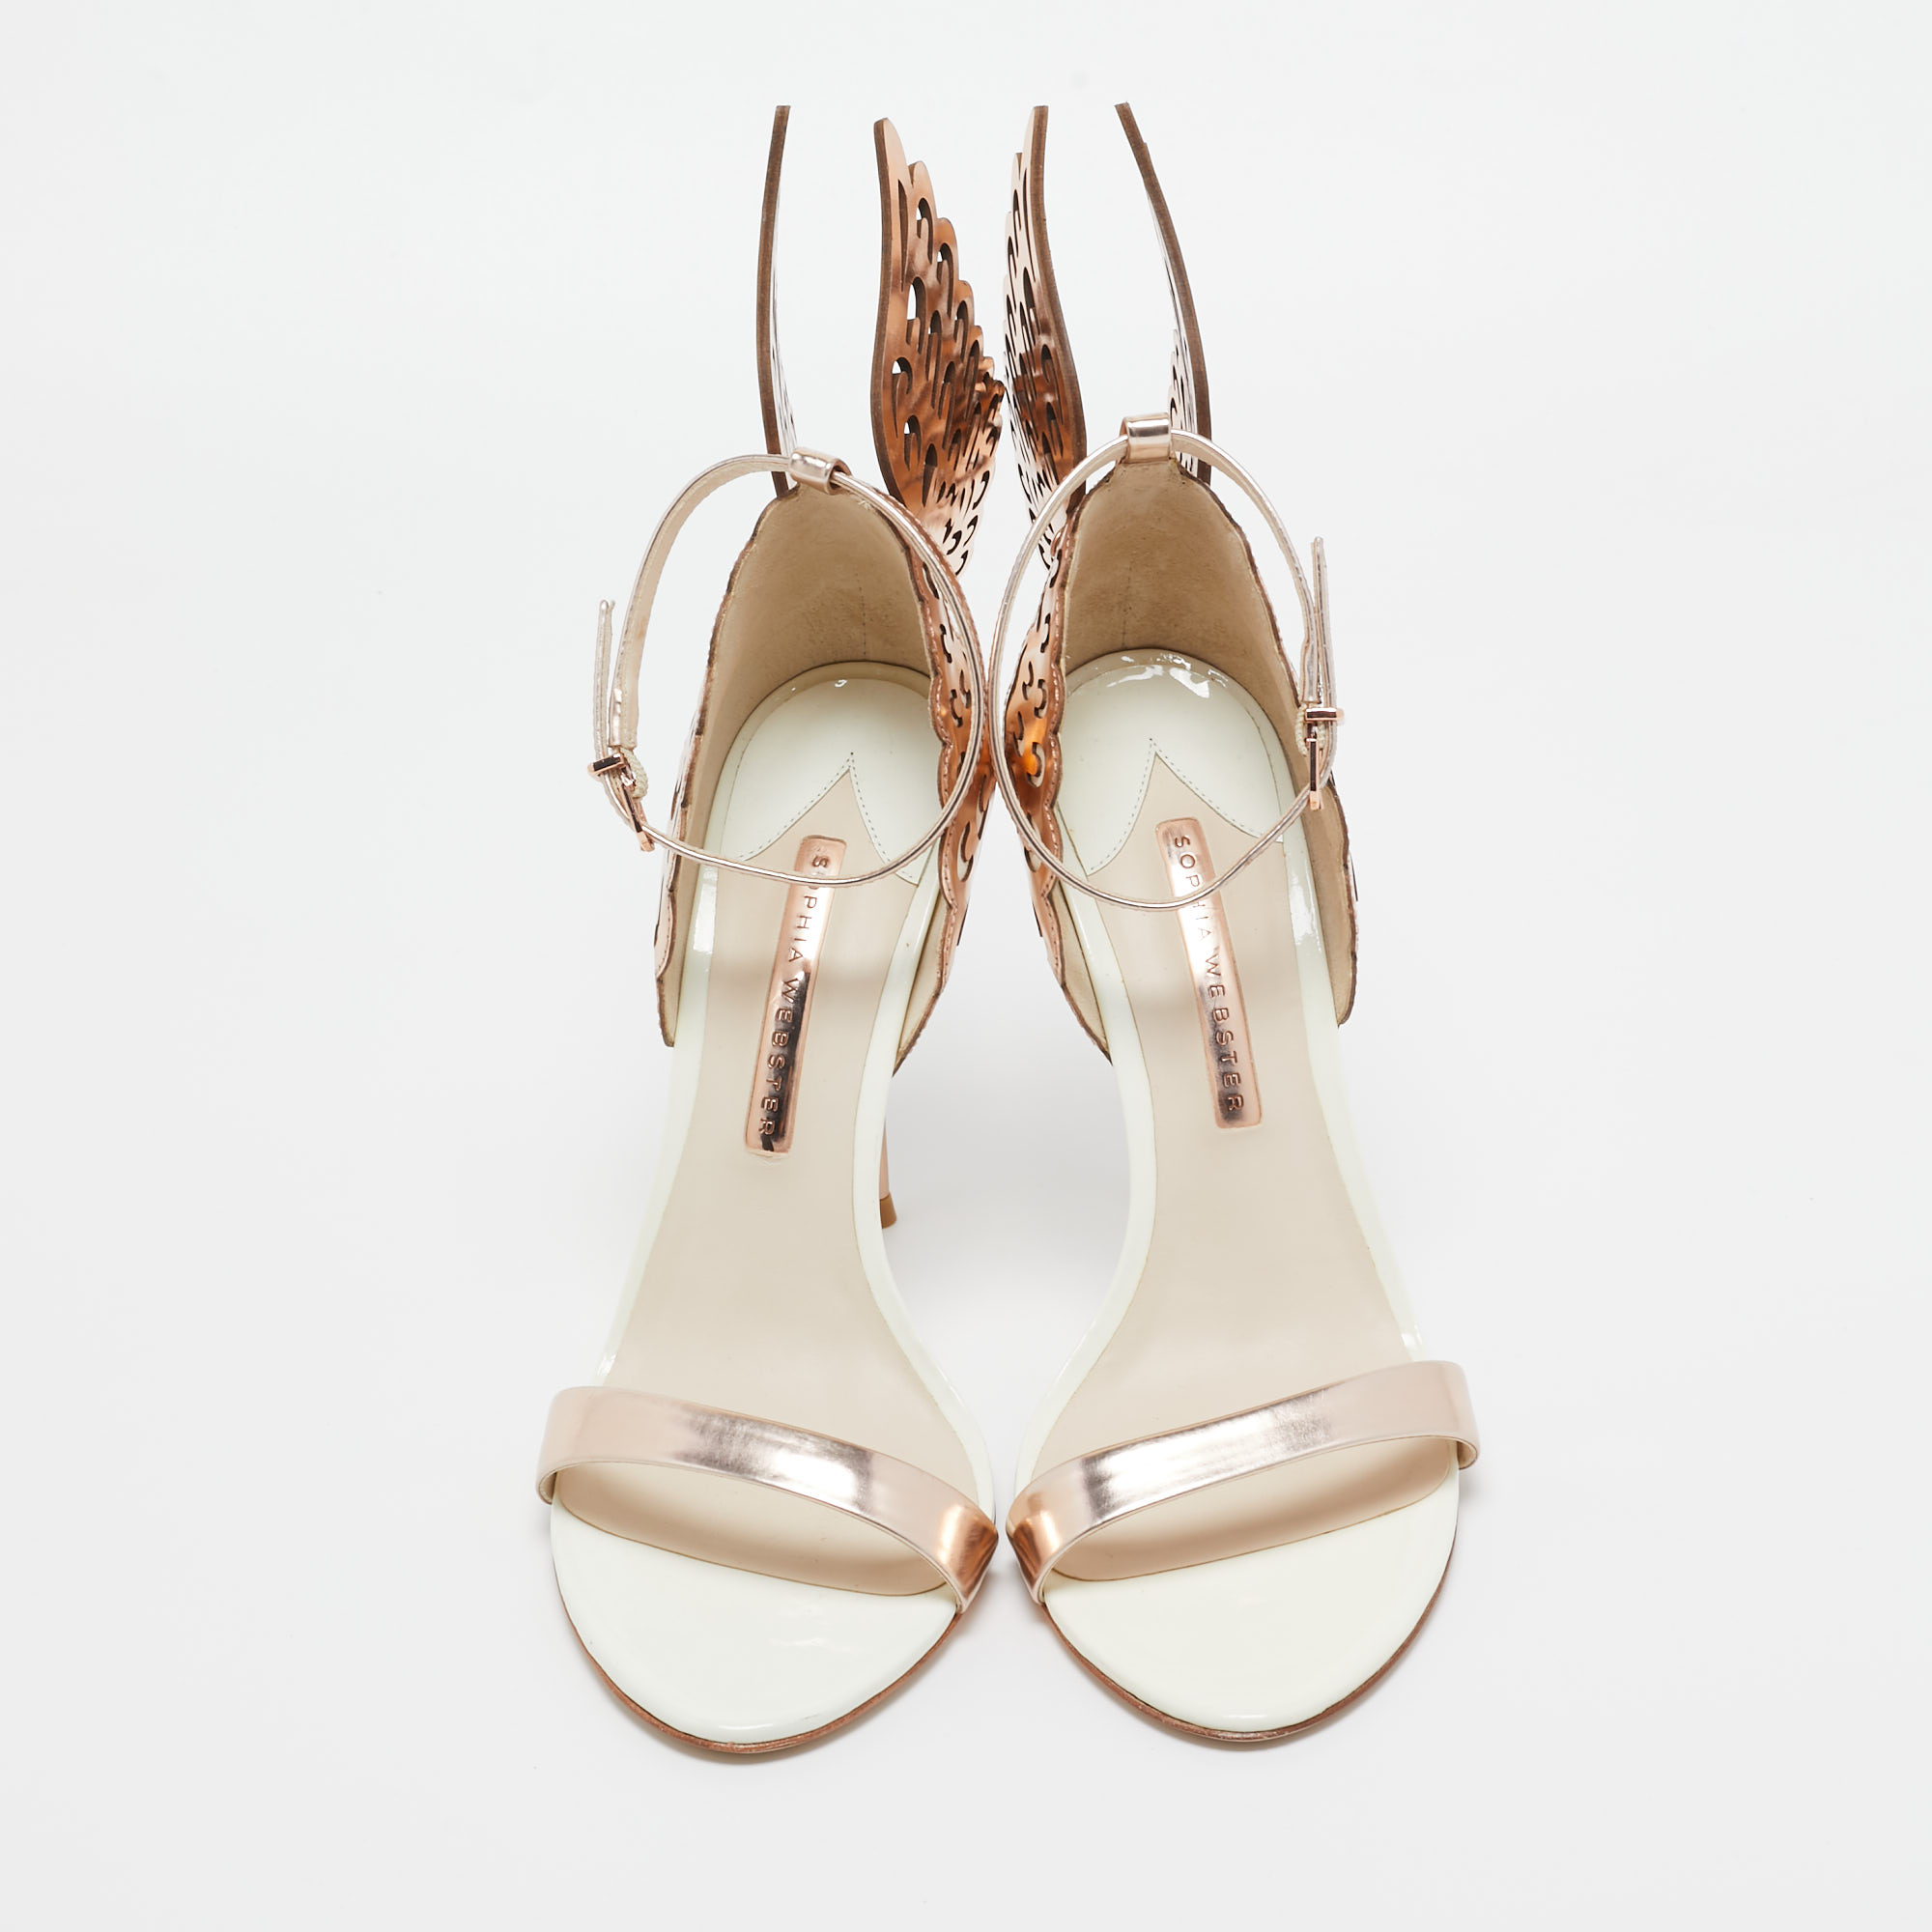 Sophia Webster Gold/White  Leather Evangeline Ankle Strap Sandals Size 40.5